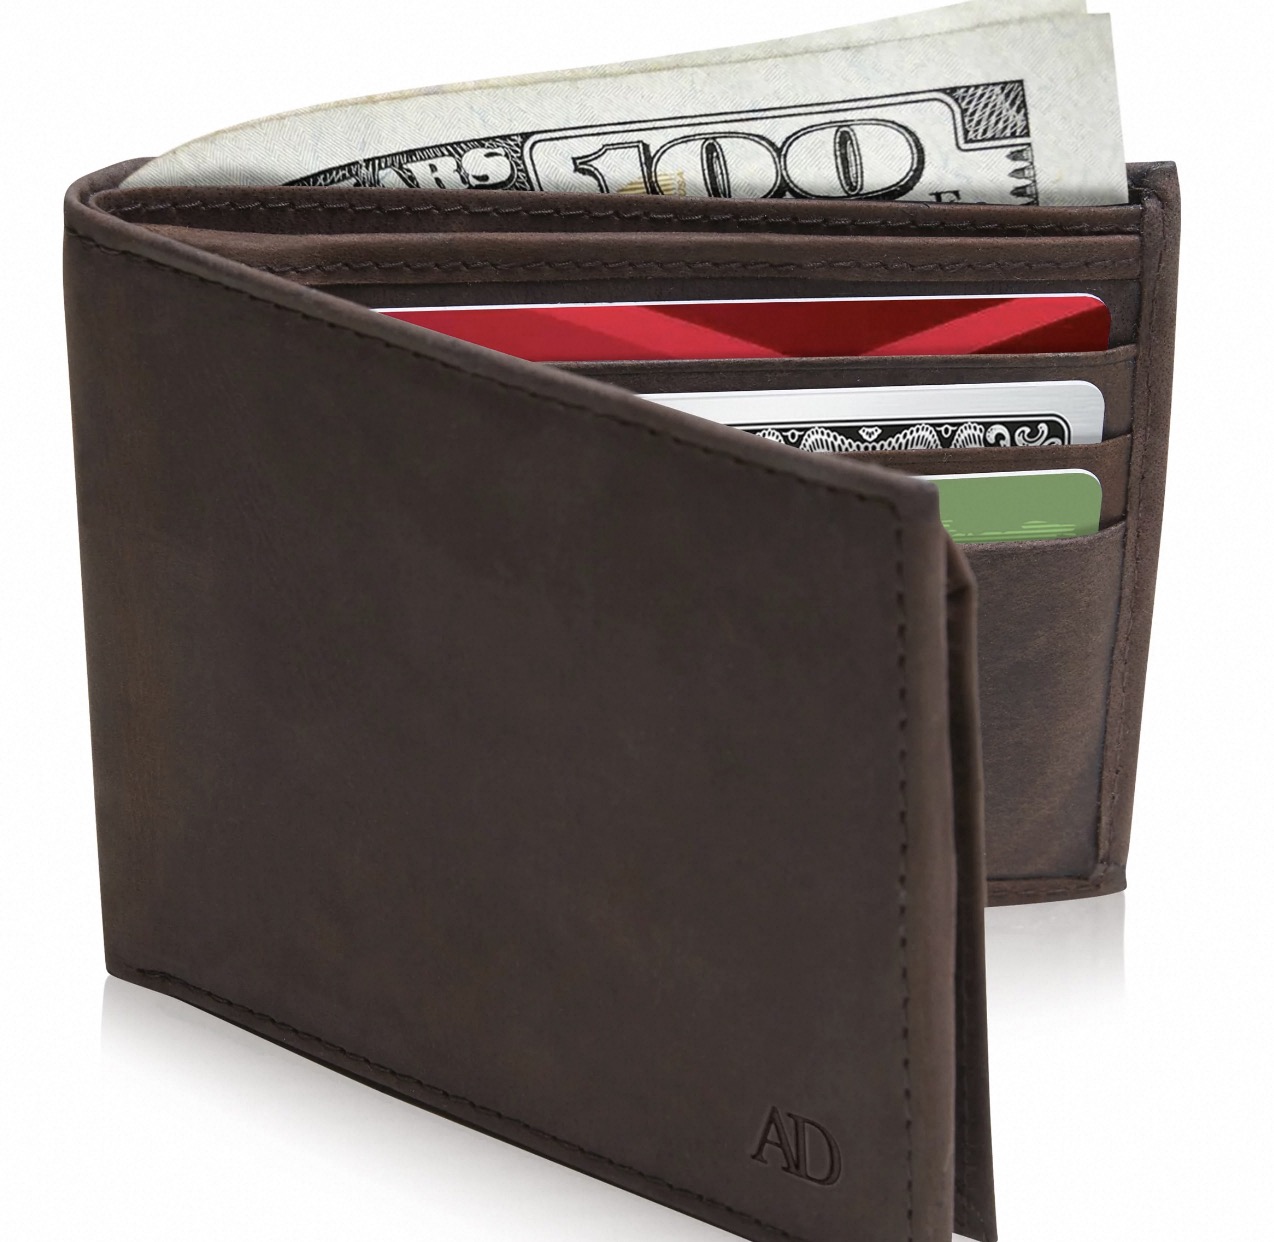 best slim wallets for men